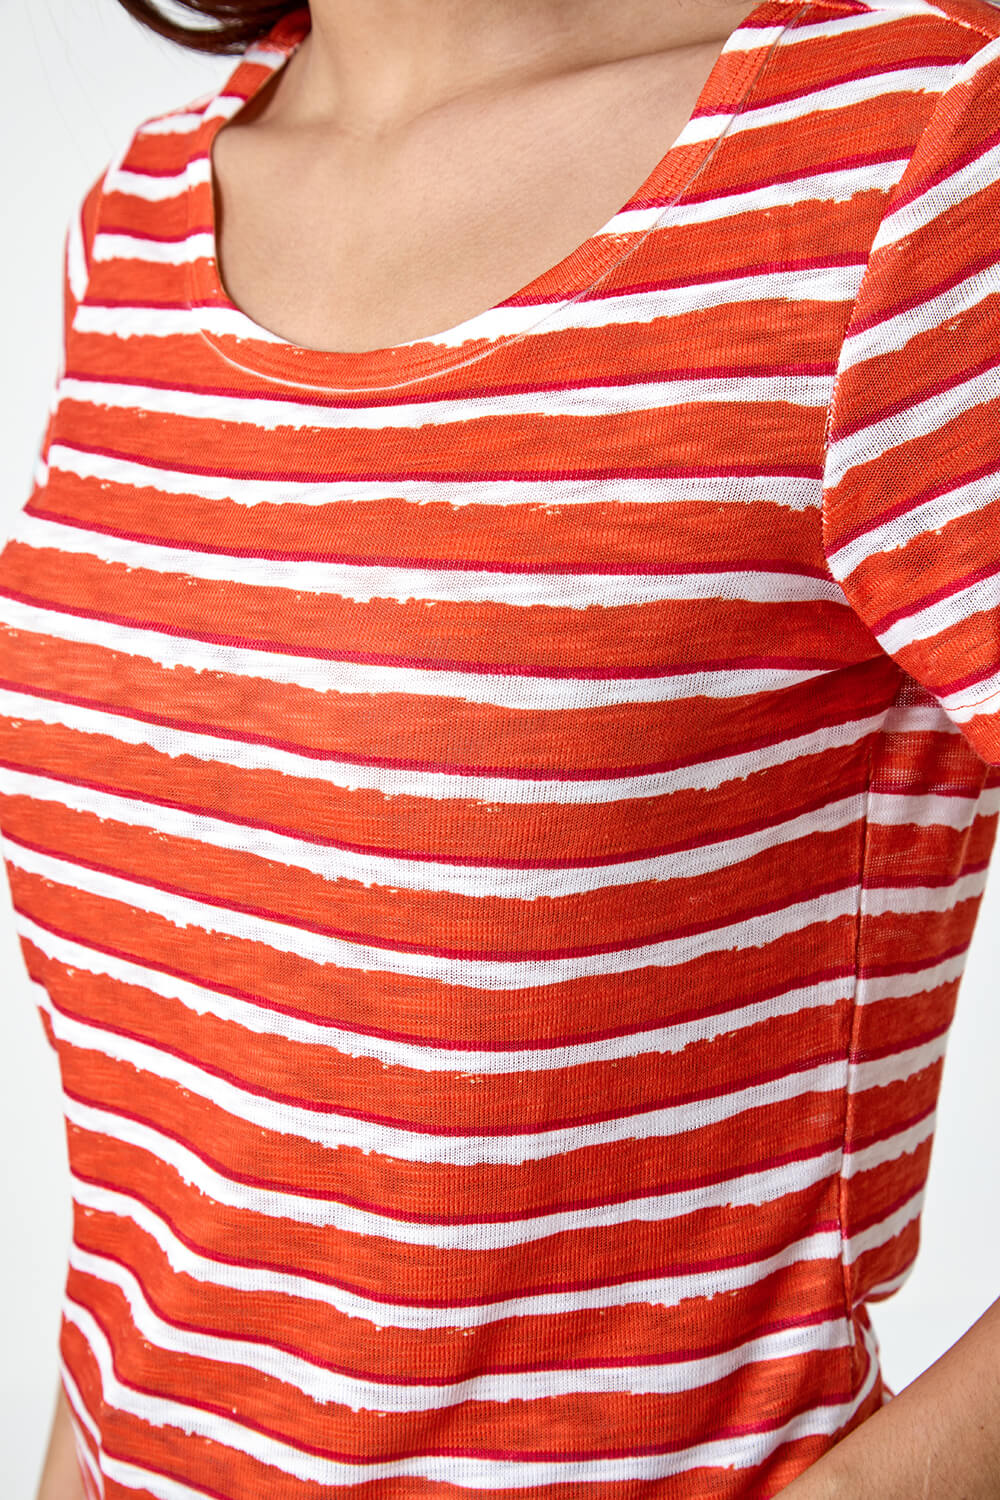 ORANGE Burnout Stripe Print T-Shirt, Image 5 of 5